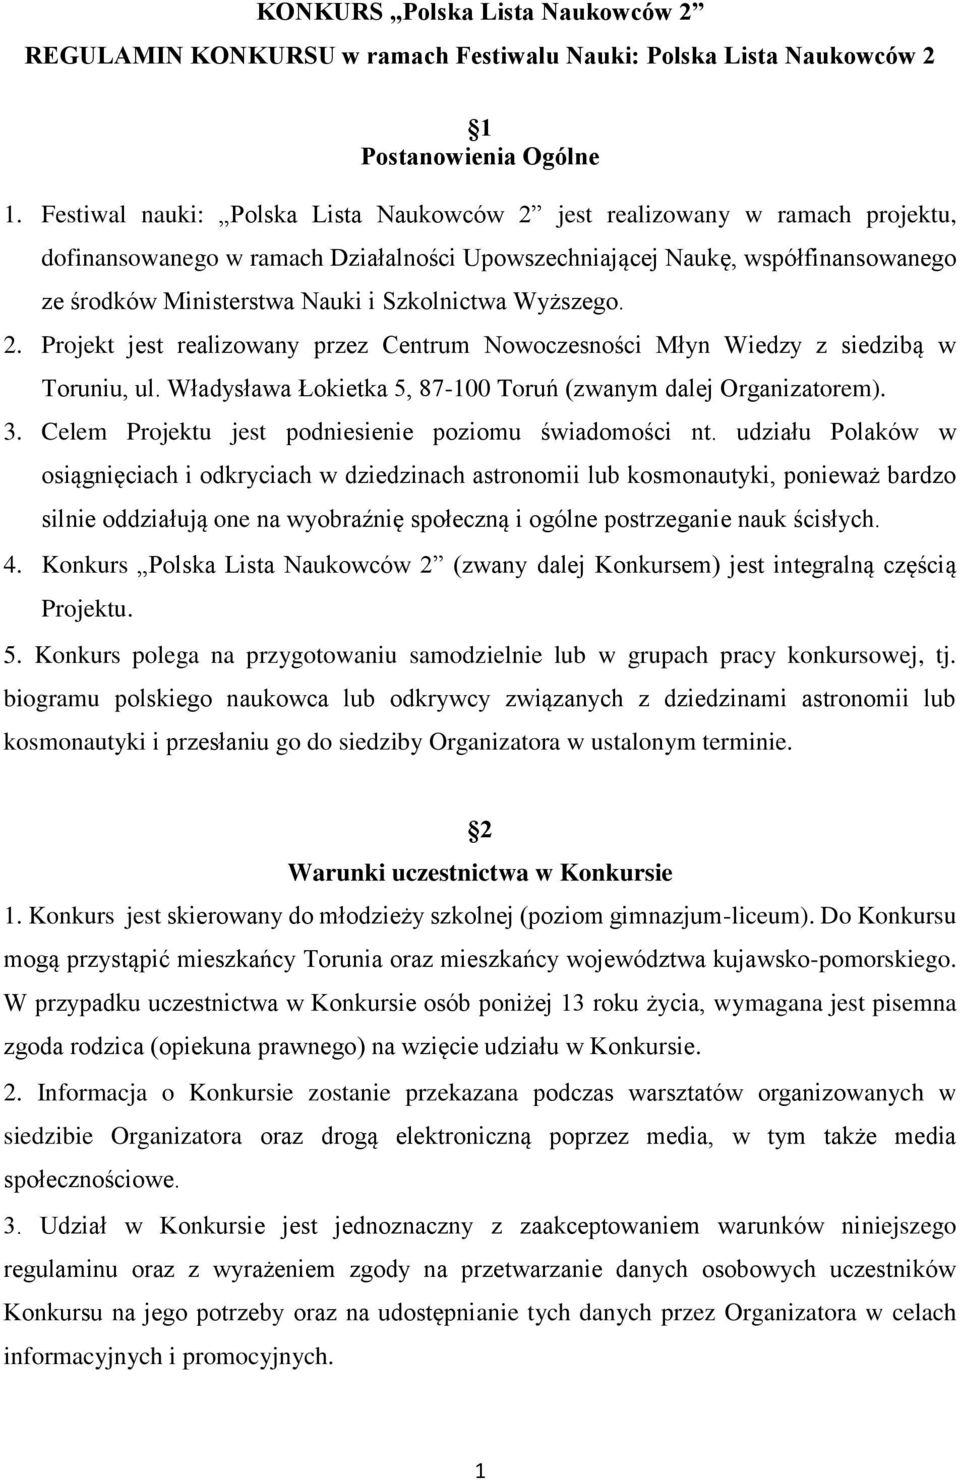 Szkolnictwa Wyższego. 2. Projekt jest realizowany przez Centrum Nowoczesności Młyn Wiedzy z siedzibą w Toruniu, ul. Władysława Łokietka 5, 87-100 Toruń (zwanym dalej Organizatorem). 3.